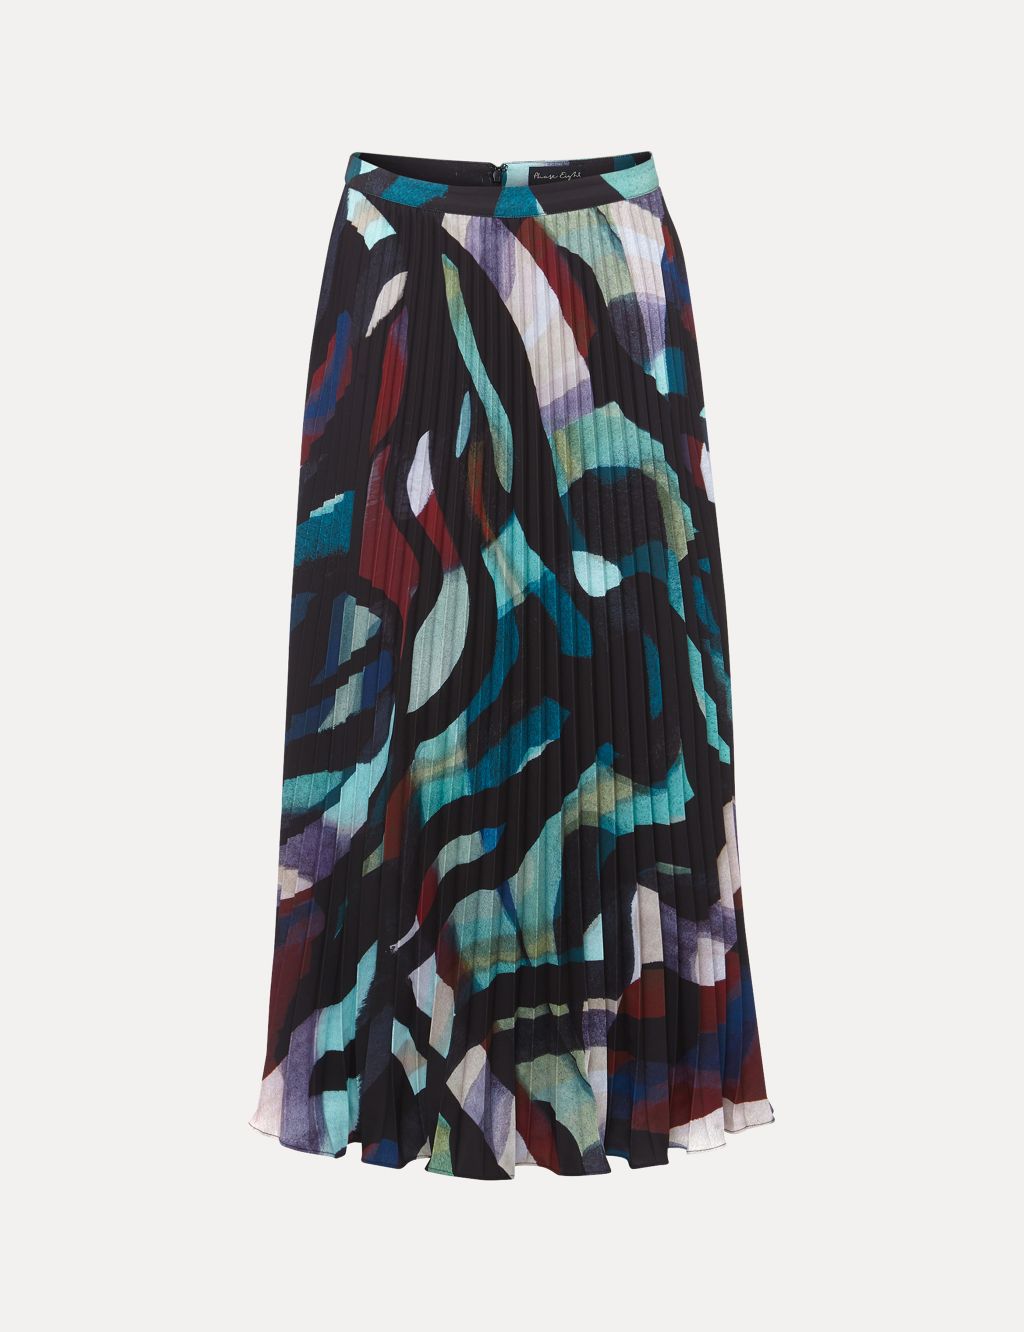 Printed Pleated Midaxi Skirt image 2